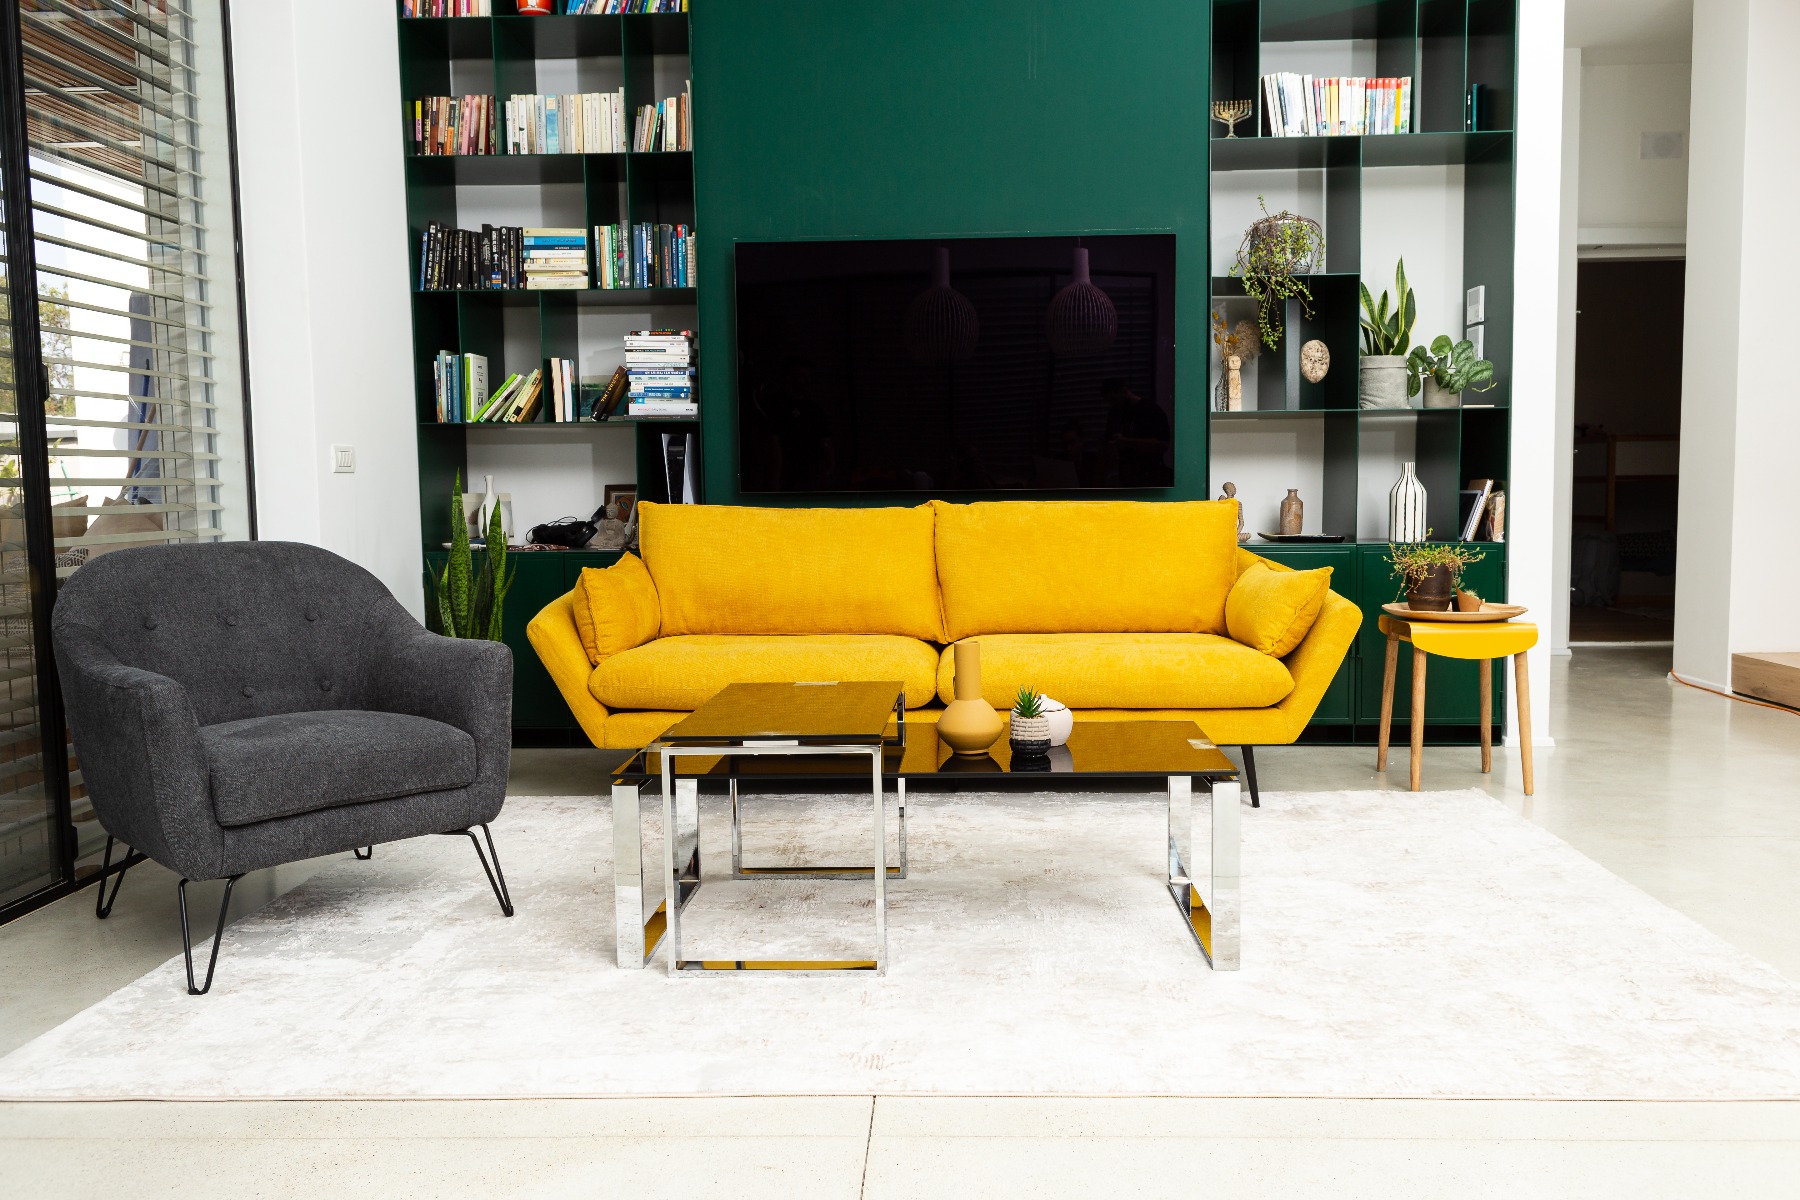 ספת CHILL  VIBE אפורה ויפה תלת מושבית בצבע צהוב בחדר מעוצב עם שטיח בצבע בז' וכורסת